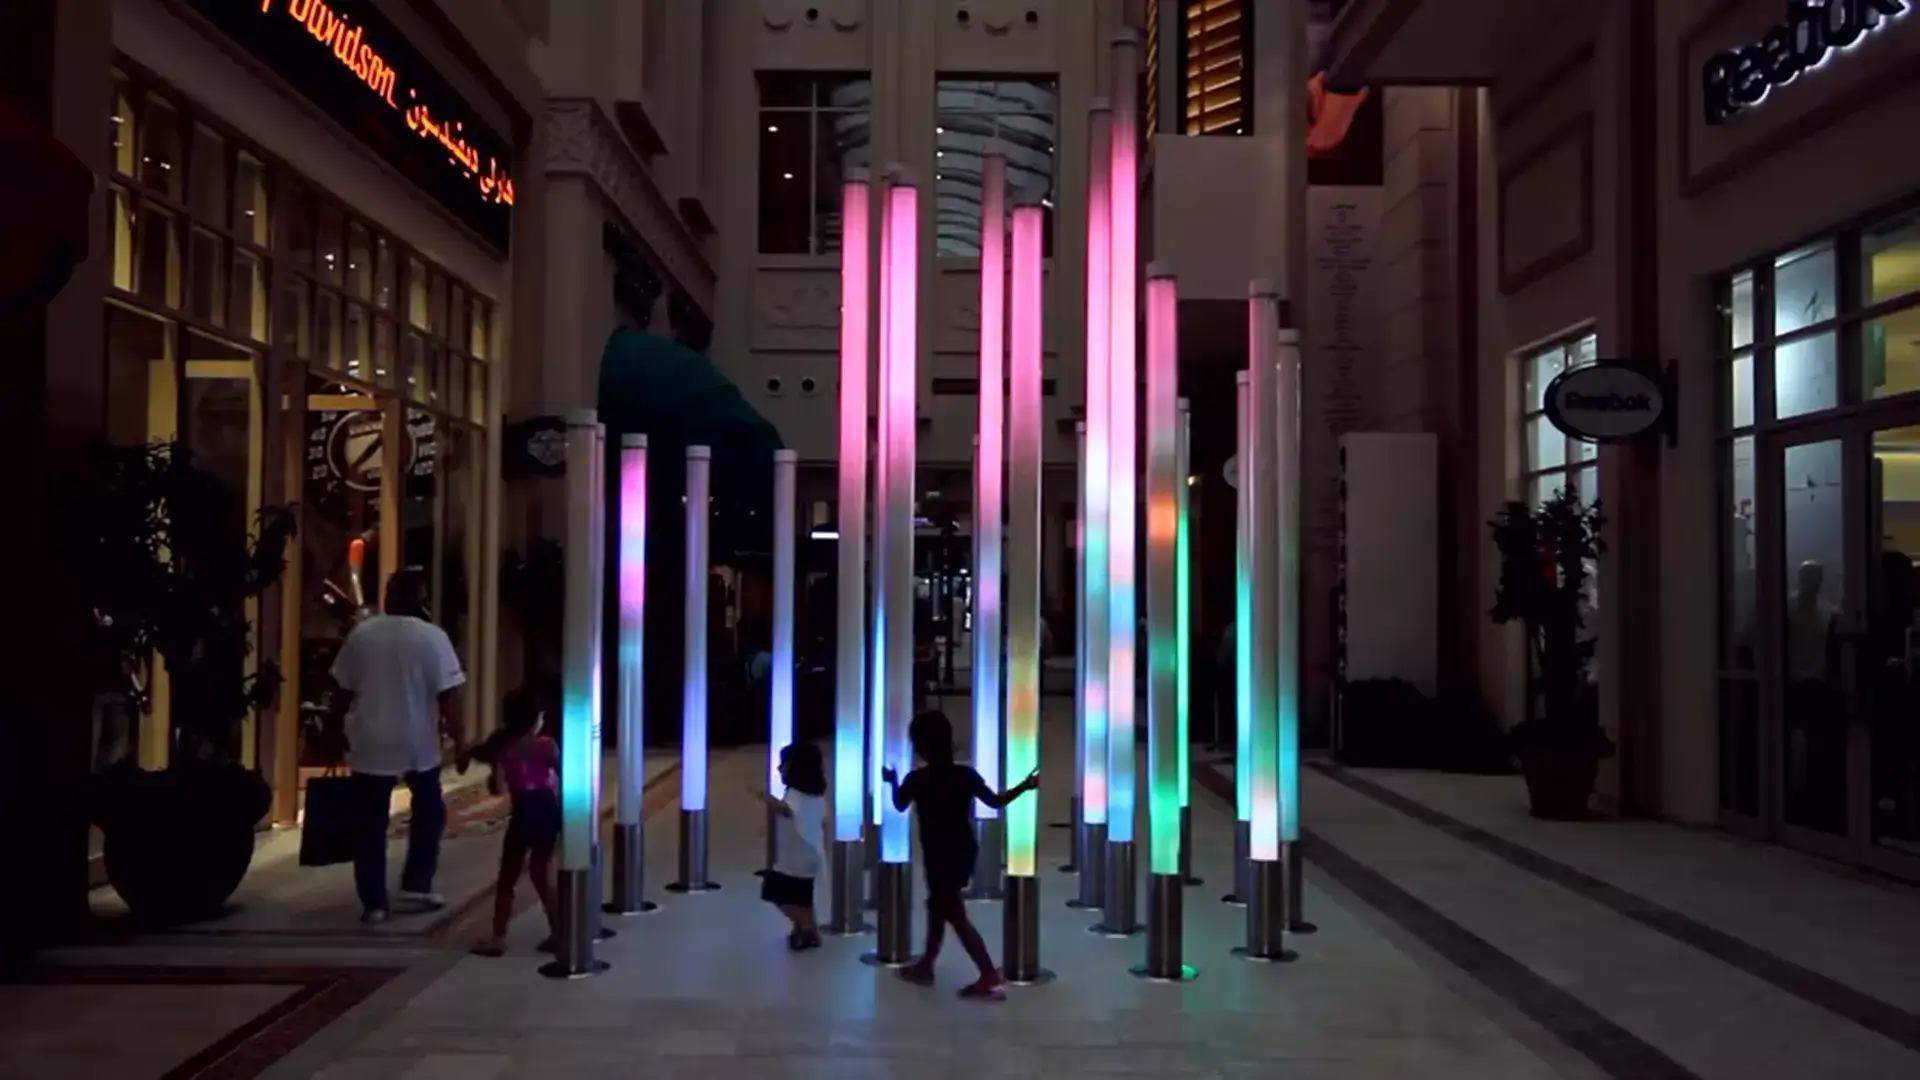 La instalación de sonido y luz en el centro comercial de Dubái	